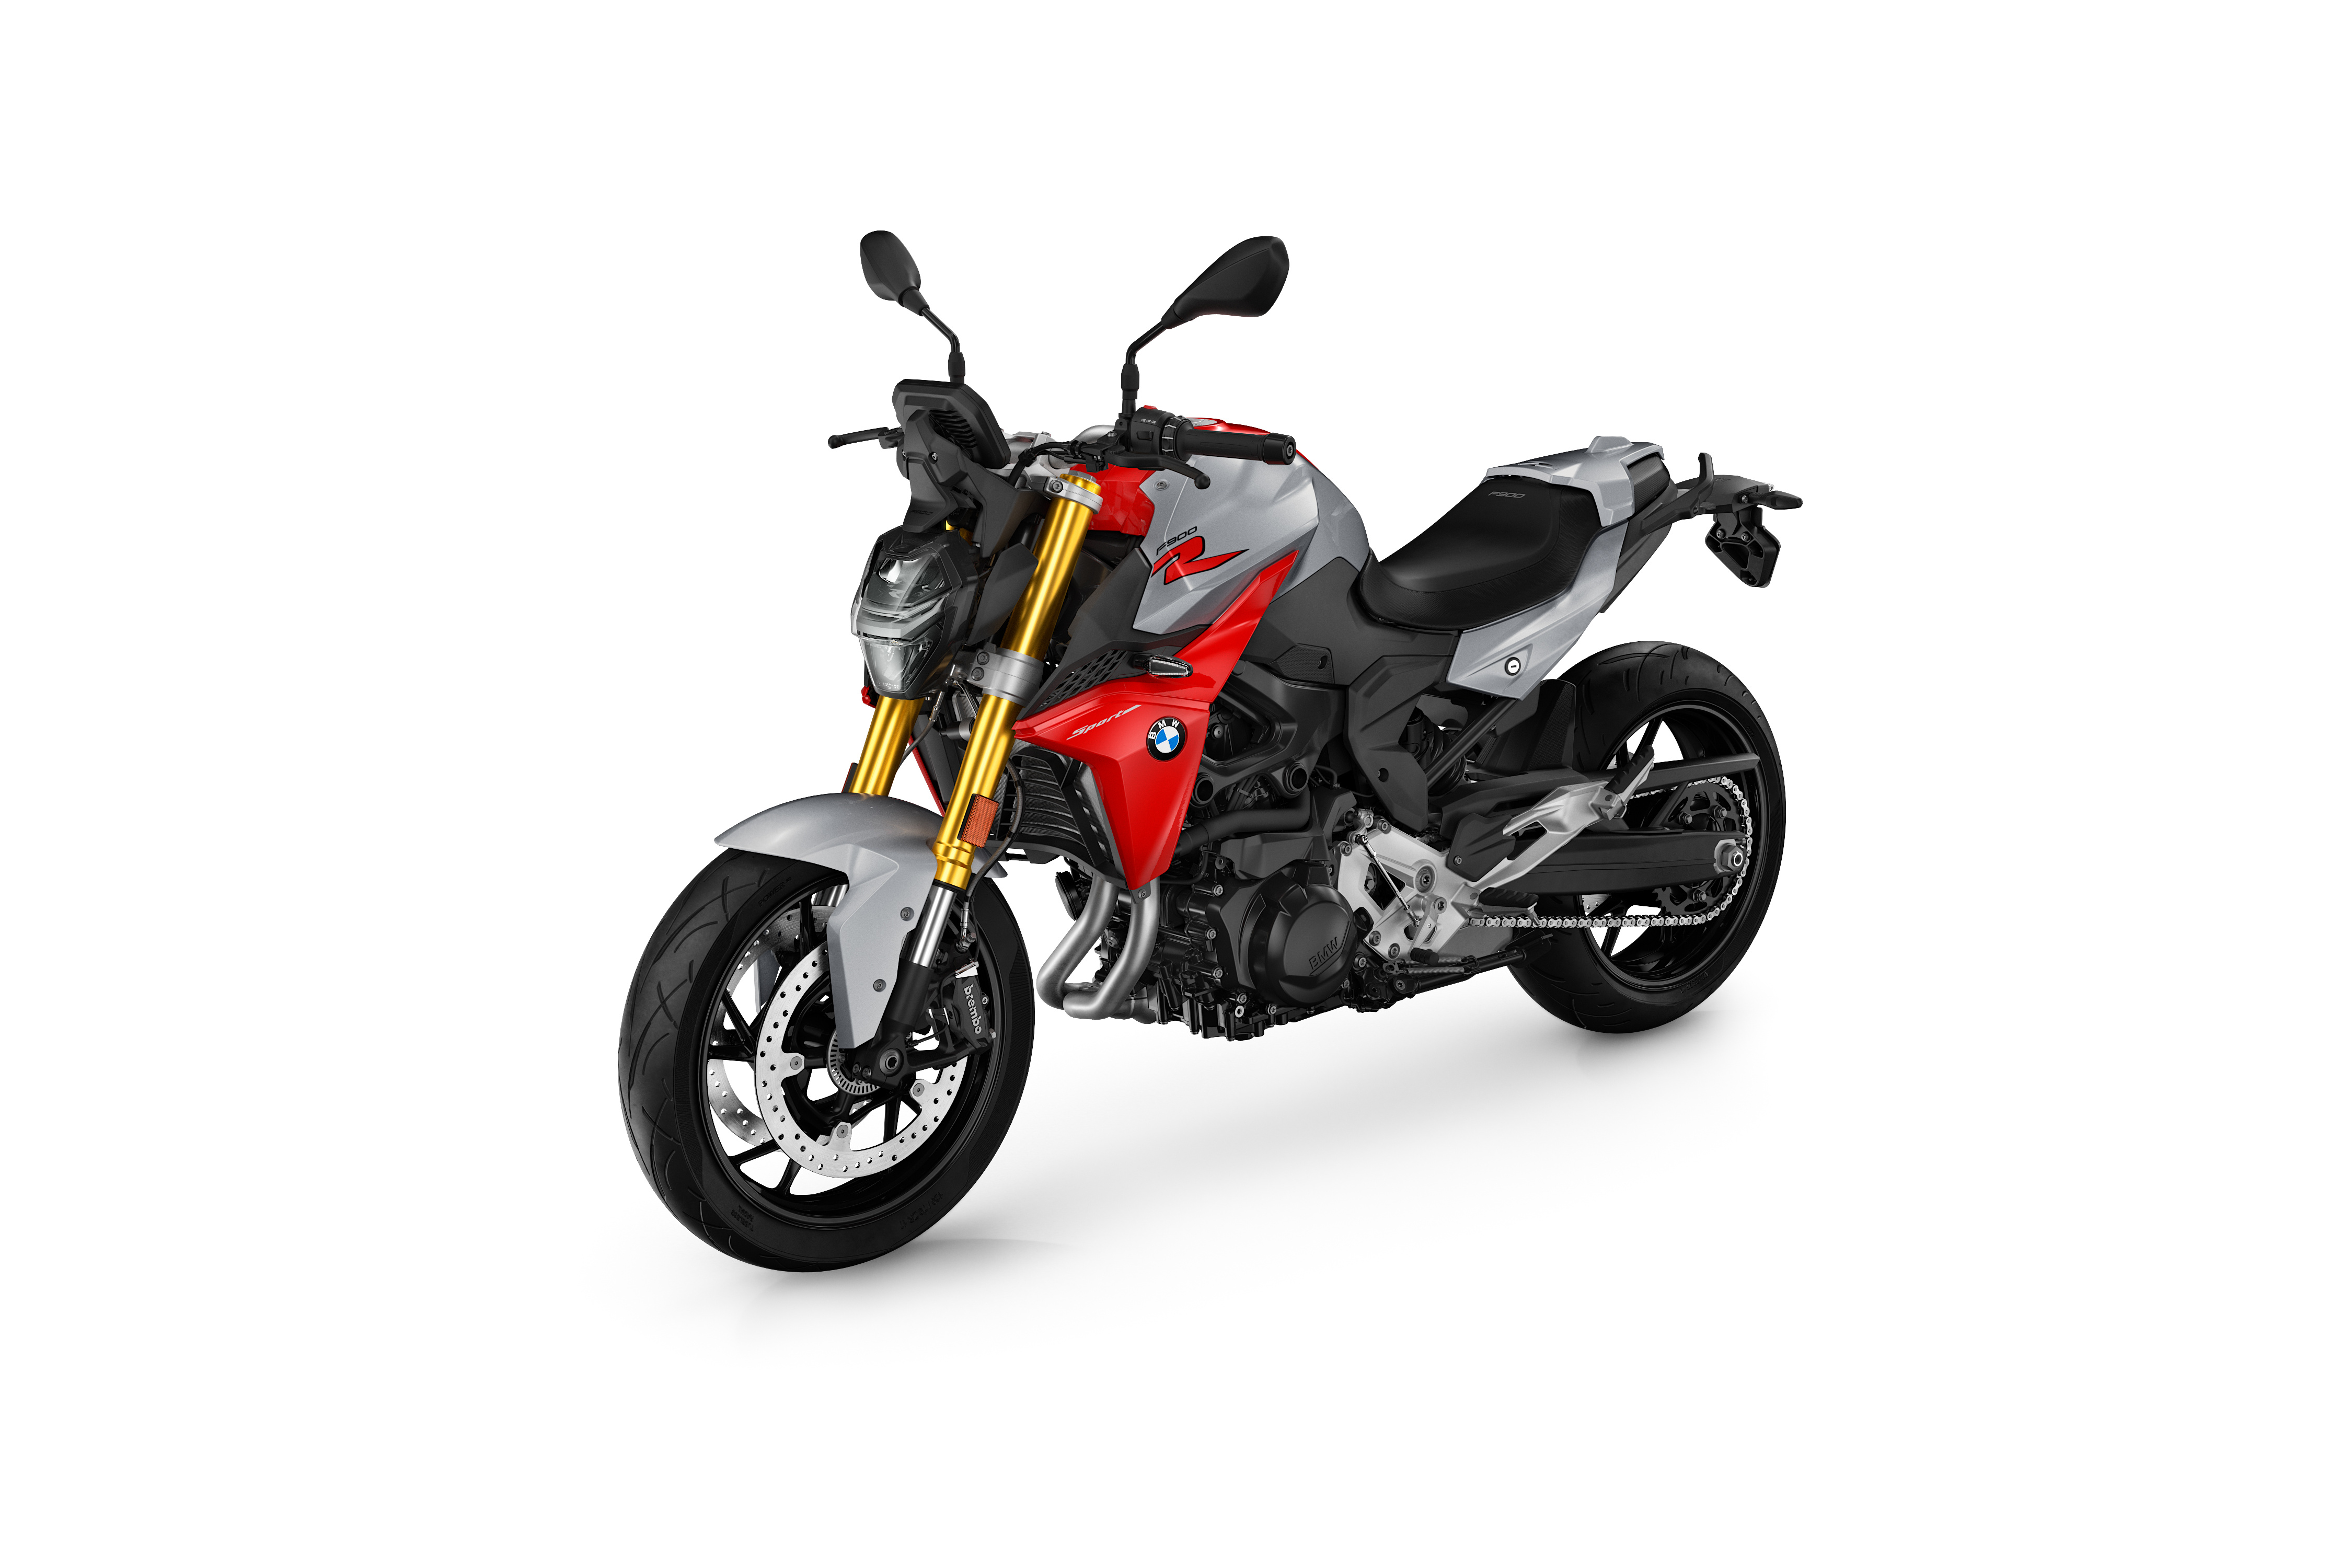 Bakgrunnsbilder BMW - Motorsykler F 900 R, 2020 motorsykkel Hvit bakgrunn Motorsykler